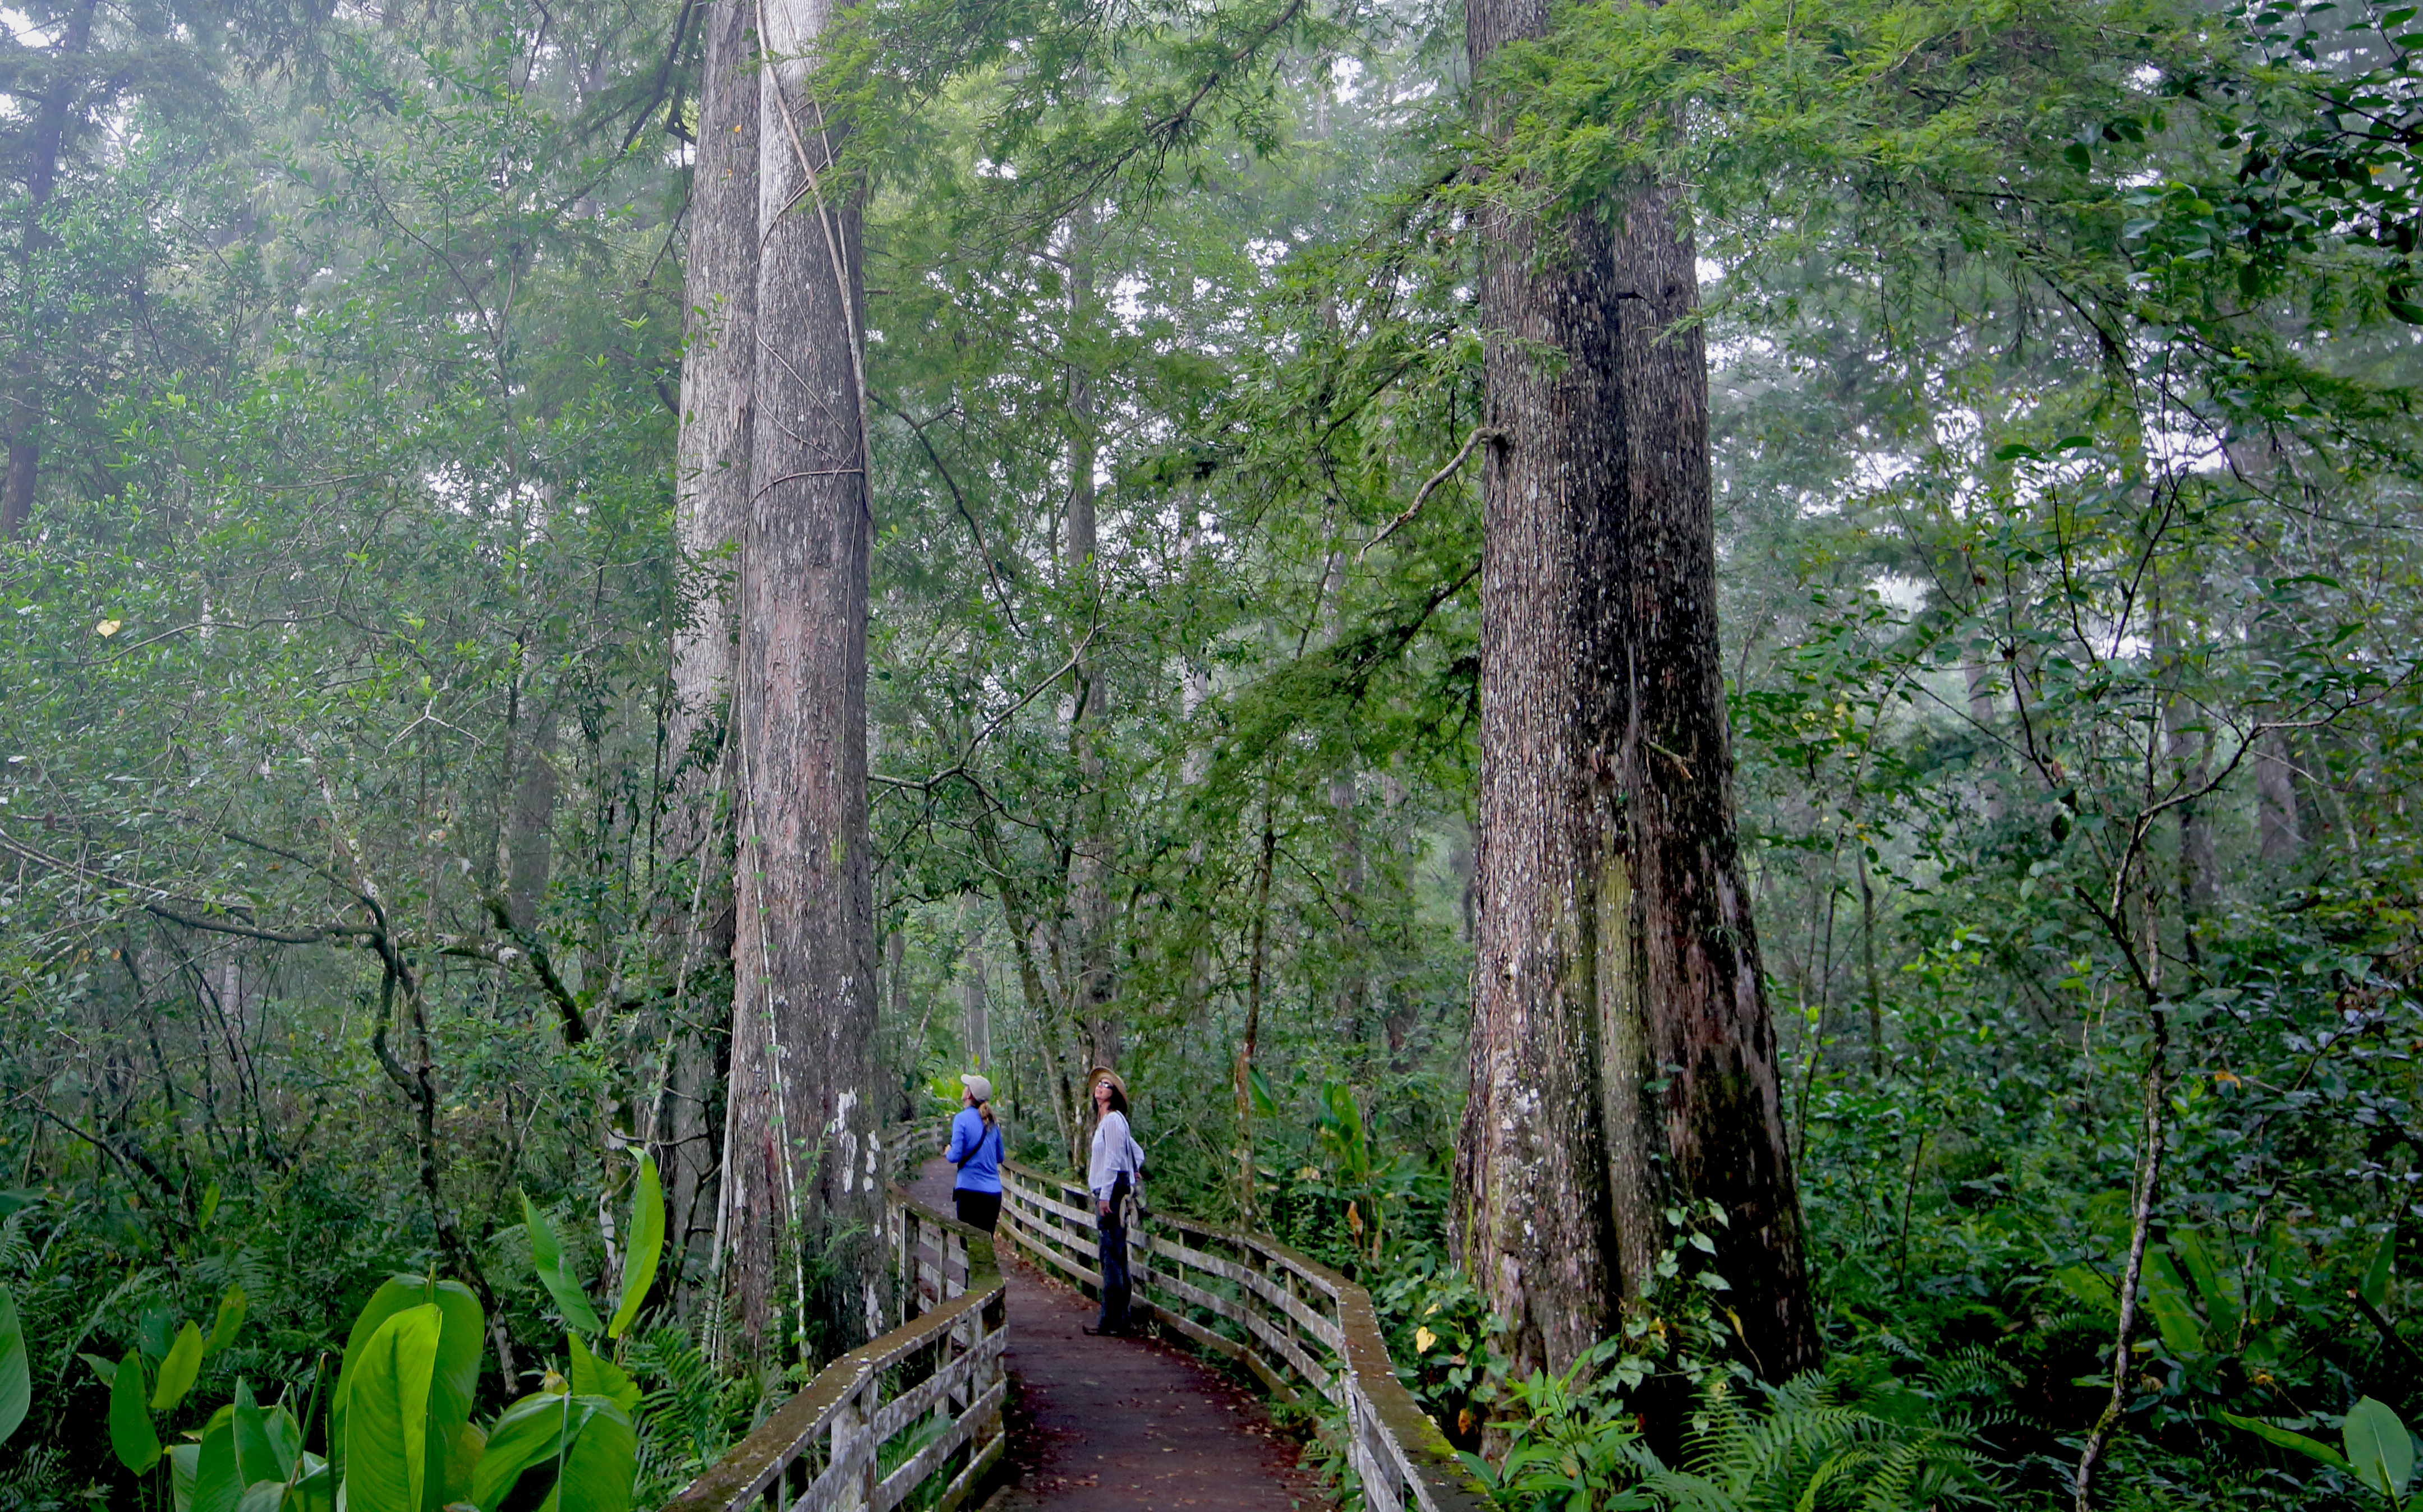 People walking between huge trees